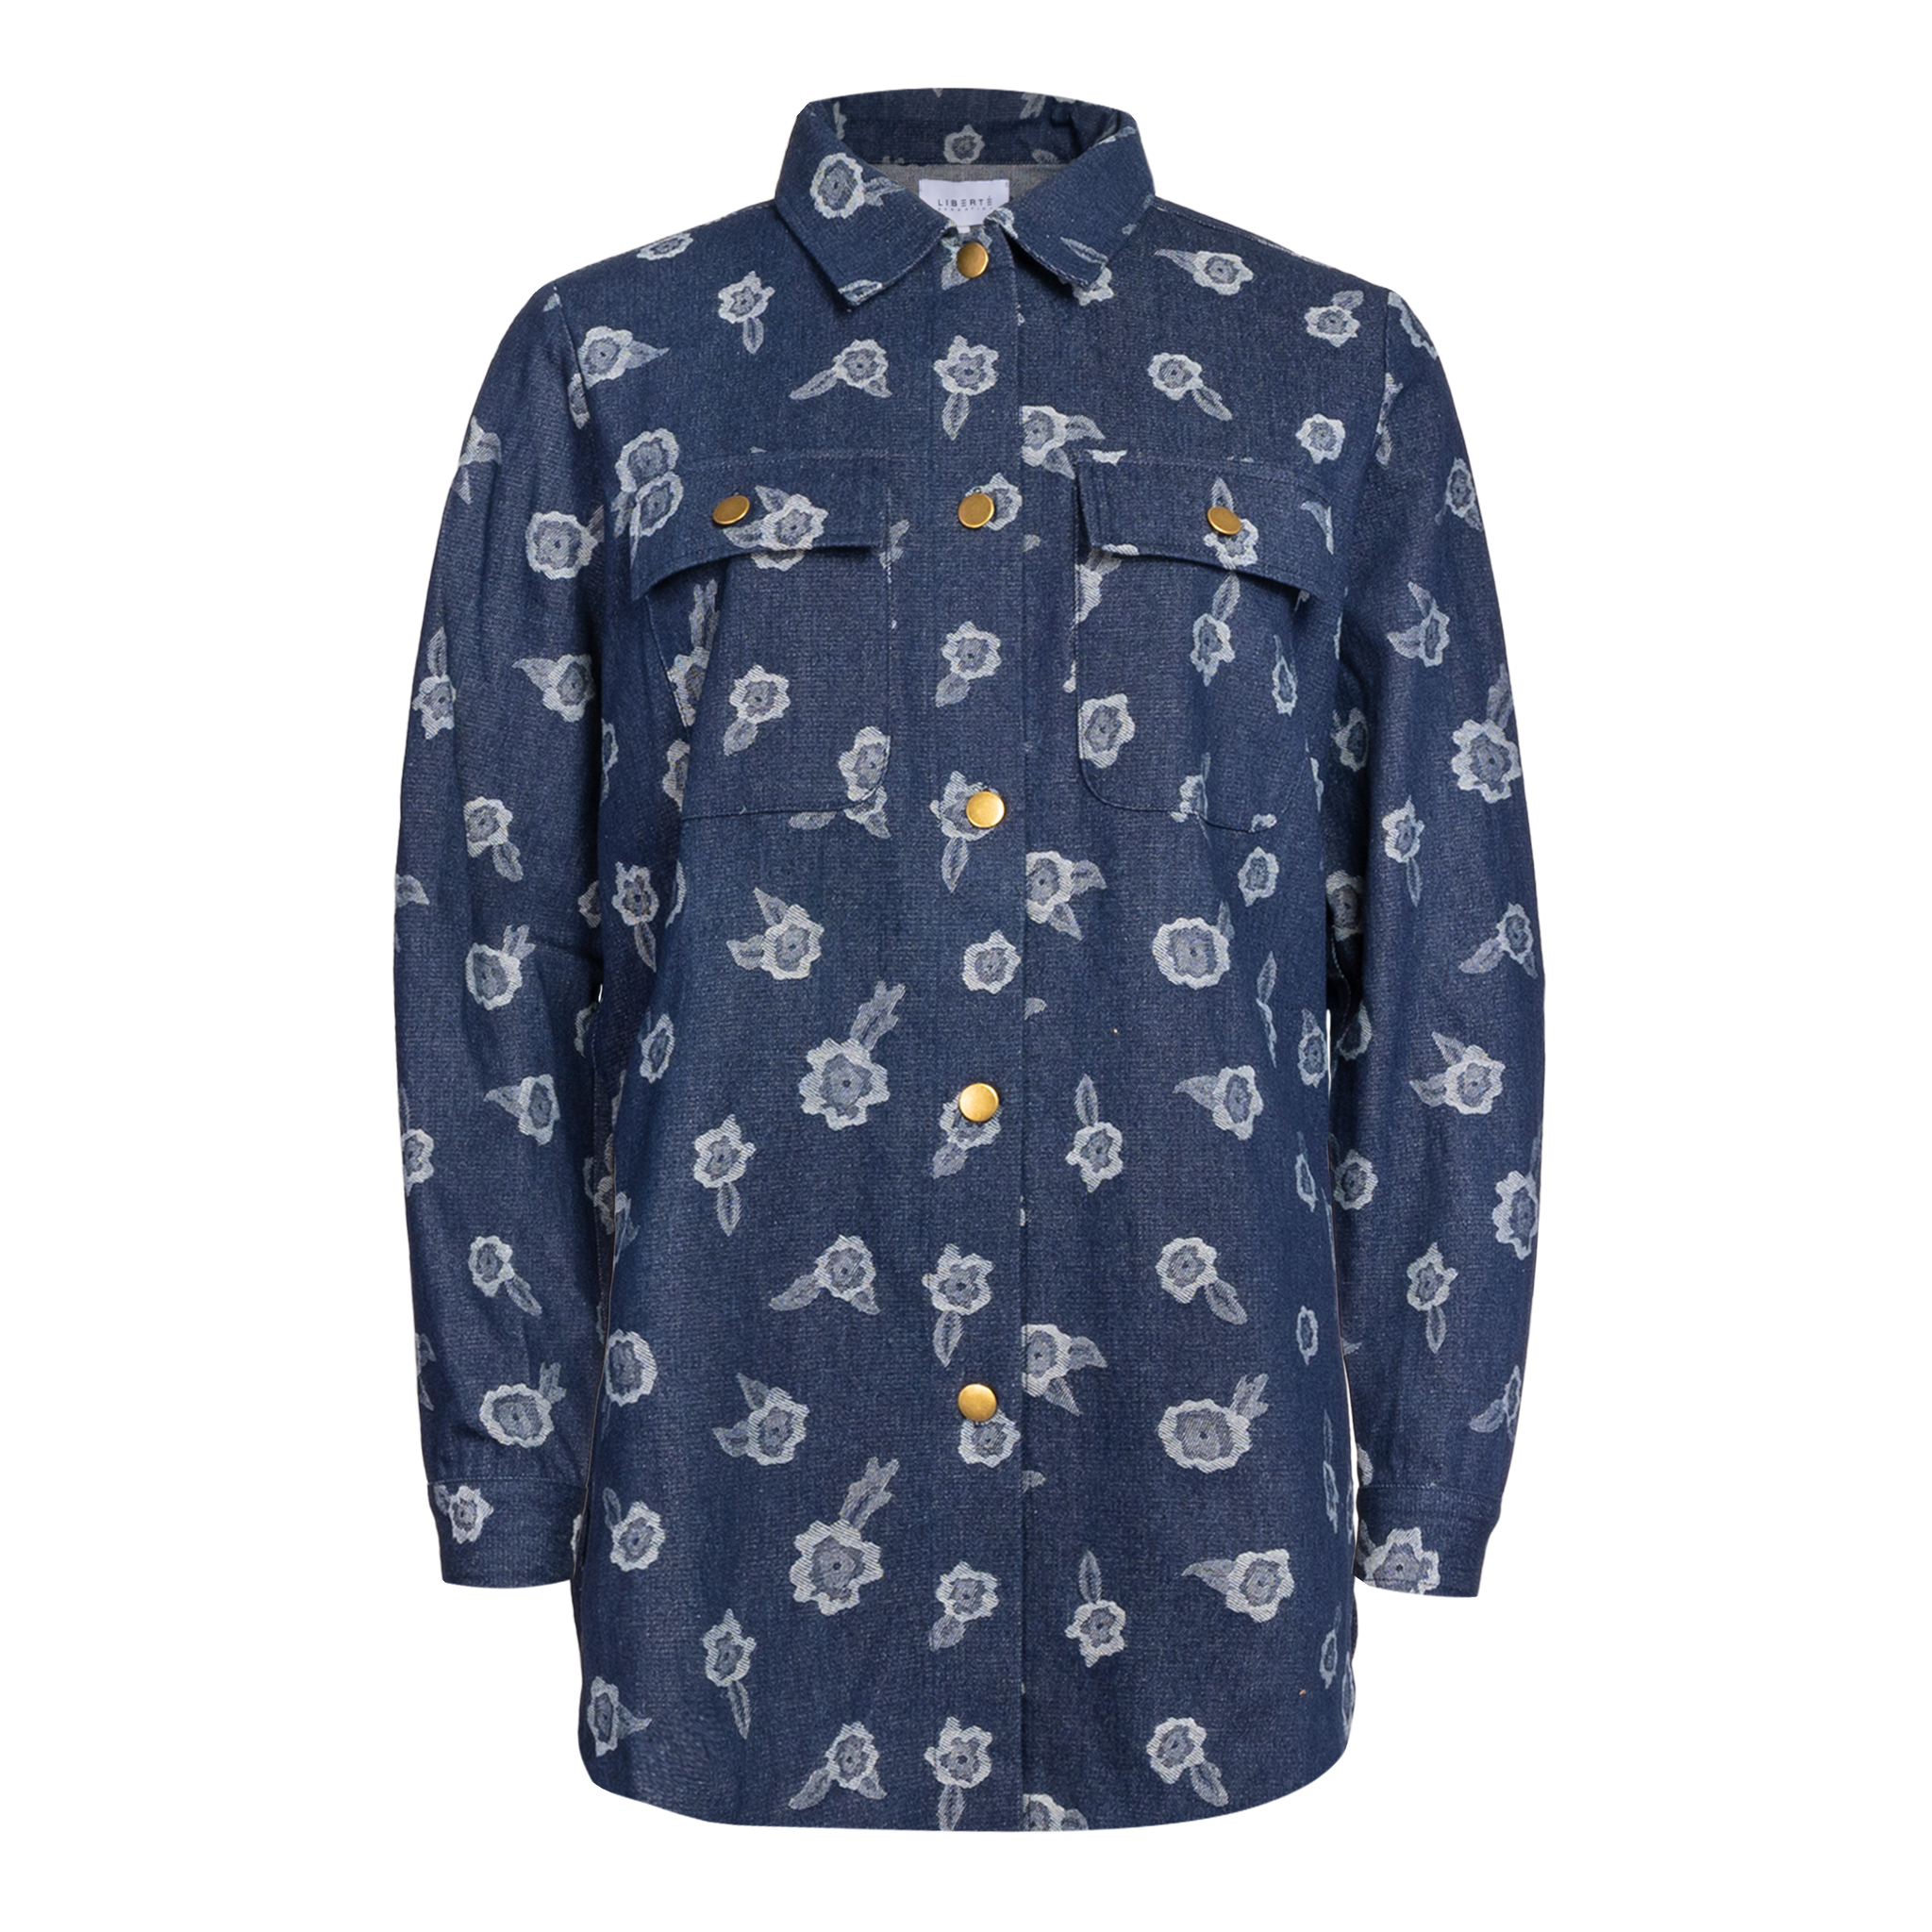 Liberté - Mitty Shirt Jacket, 21503 - Denim Flower